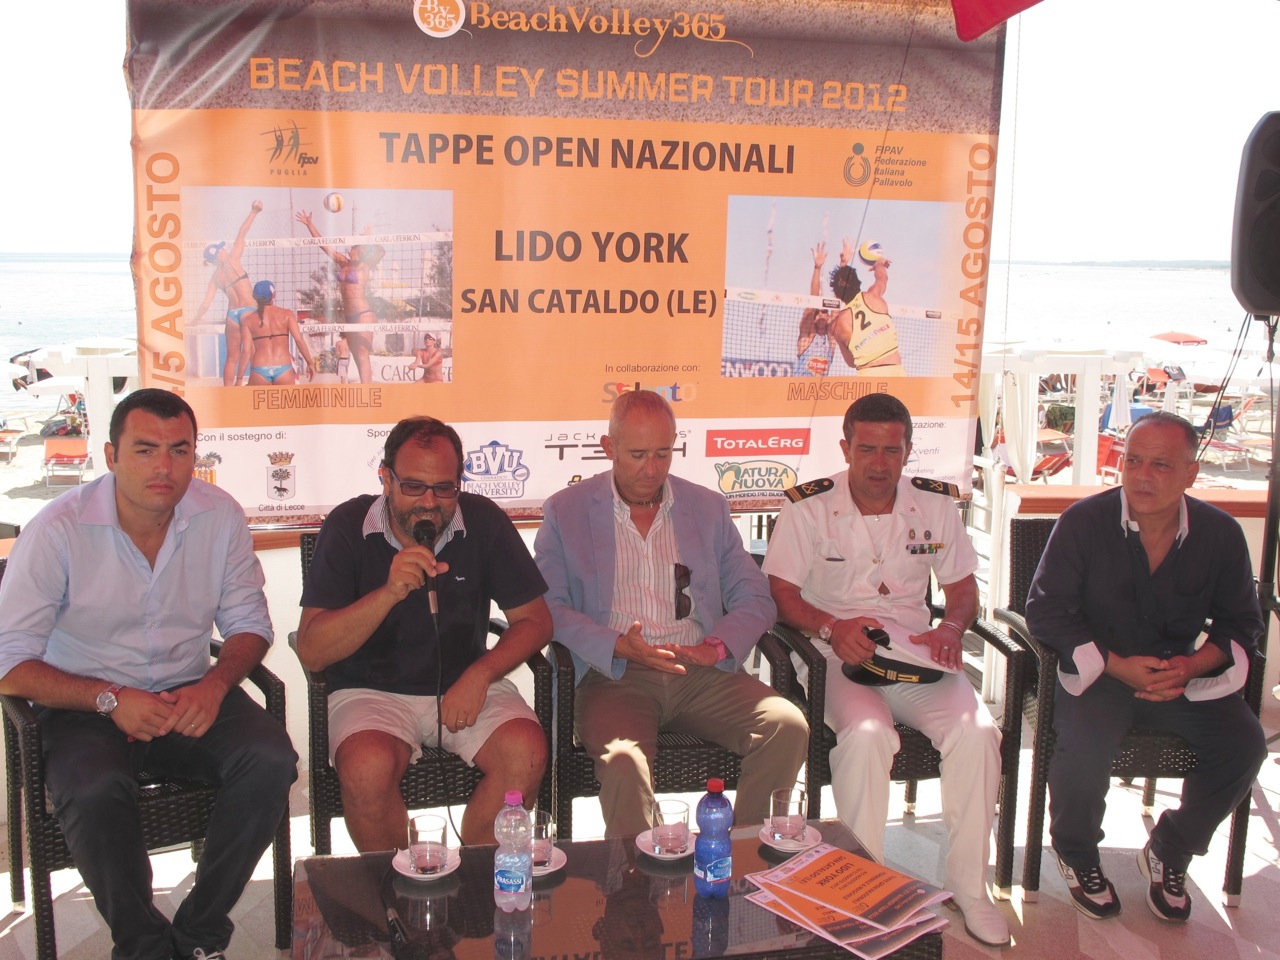 4 e 5 agosto 2012: Salento d'Amare a San Cataldo per il Beach Volley Summer Tour